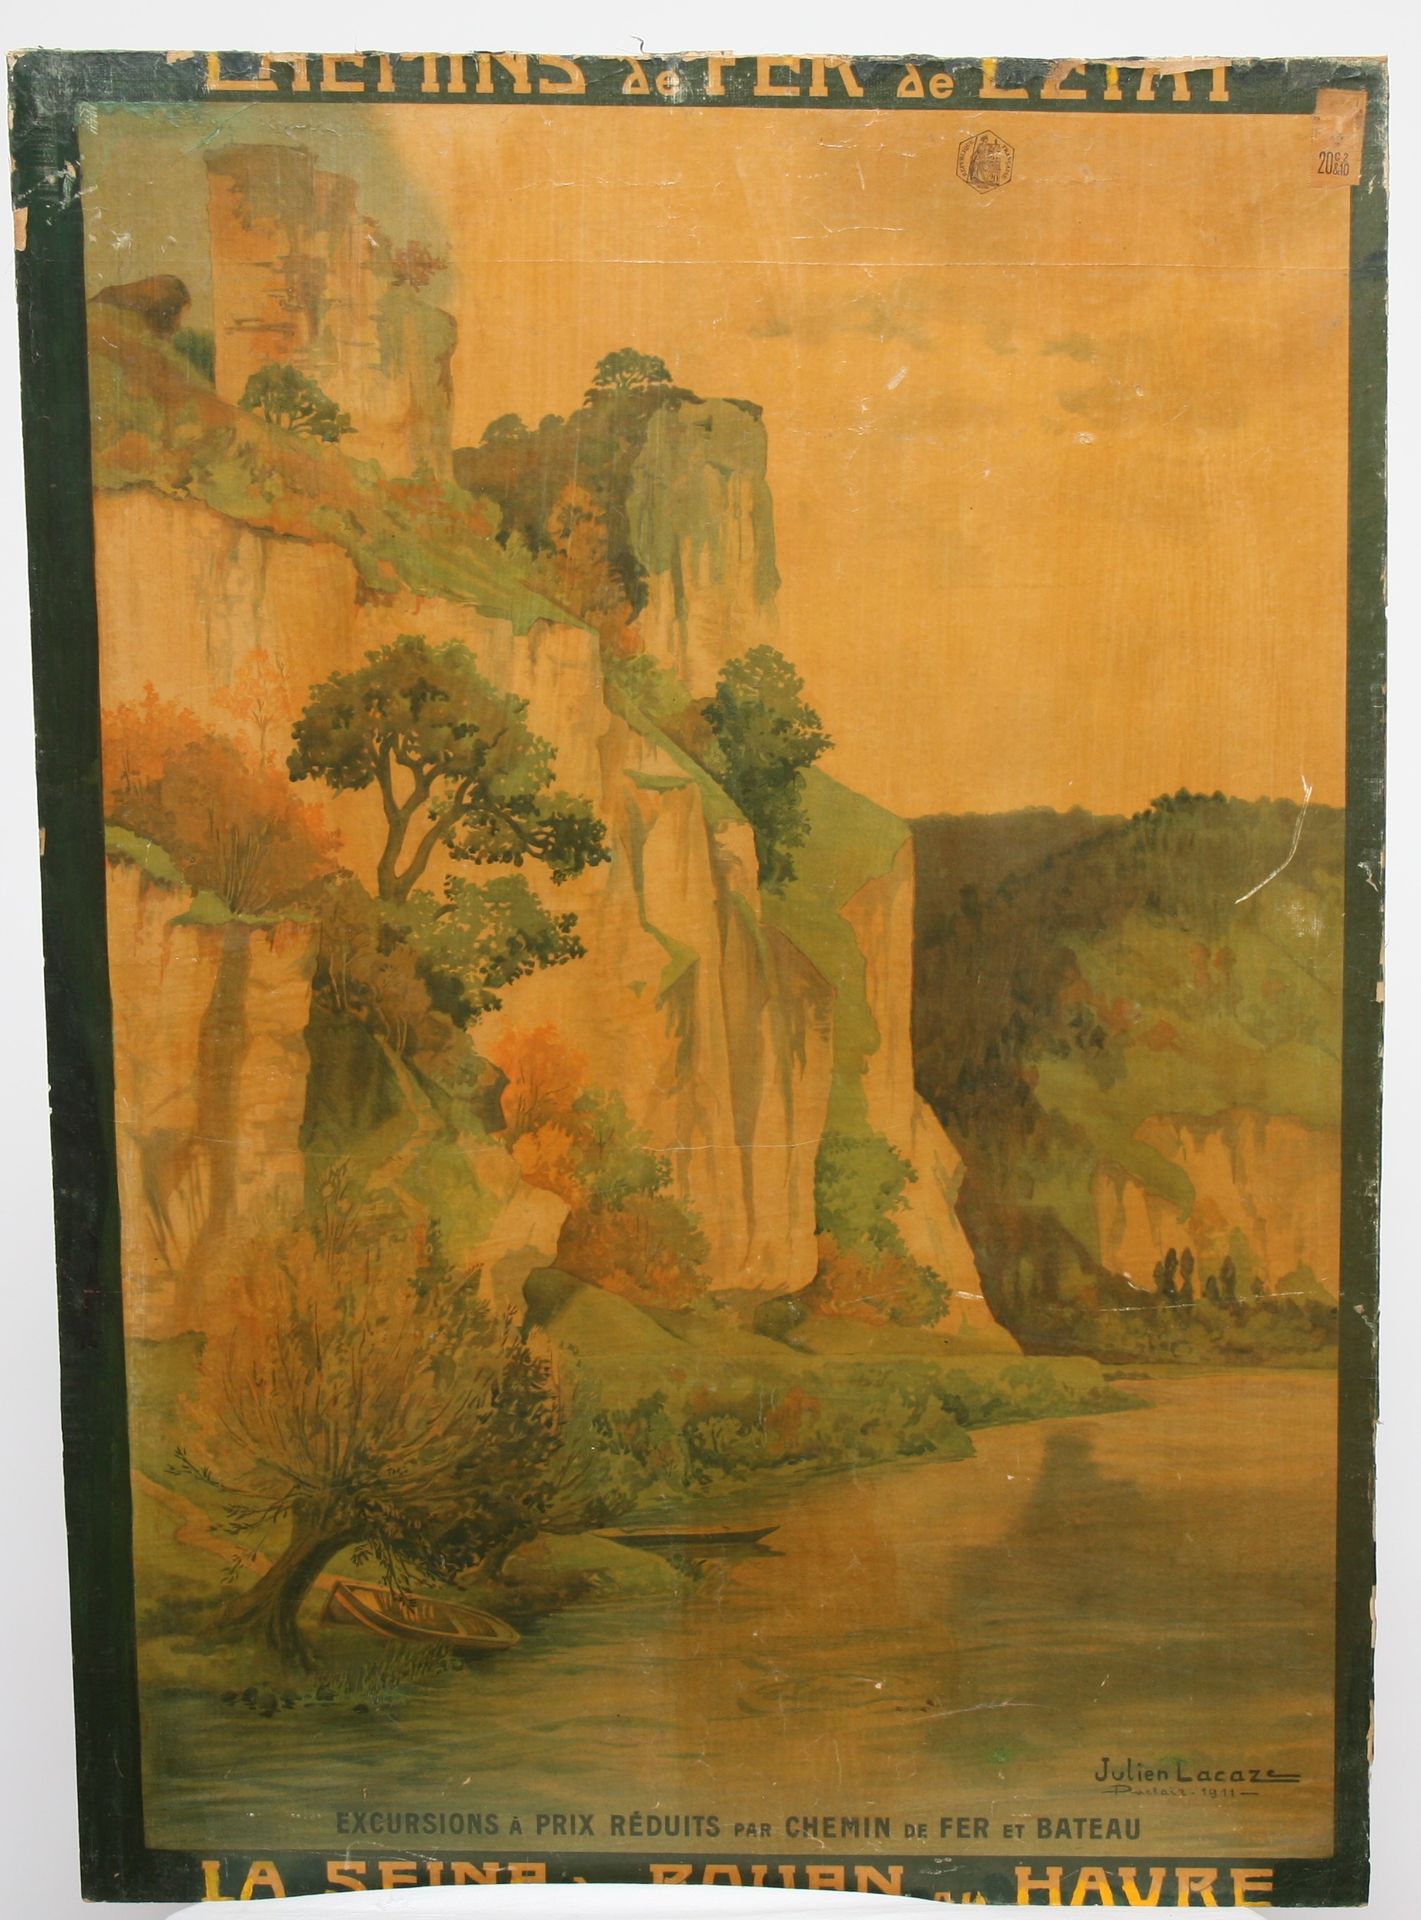 Null 海报 "国家铁路--从鲁昂到勒哈弗的塞纳河"。

粘贴在面板上的海报

20世纪初

102 x 73 cm

如是